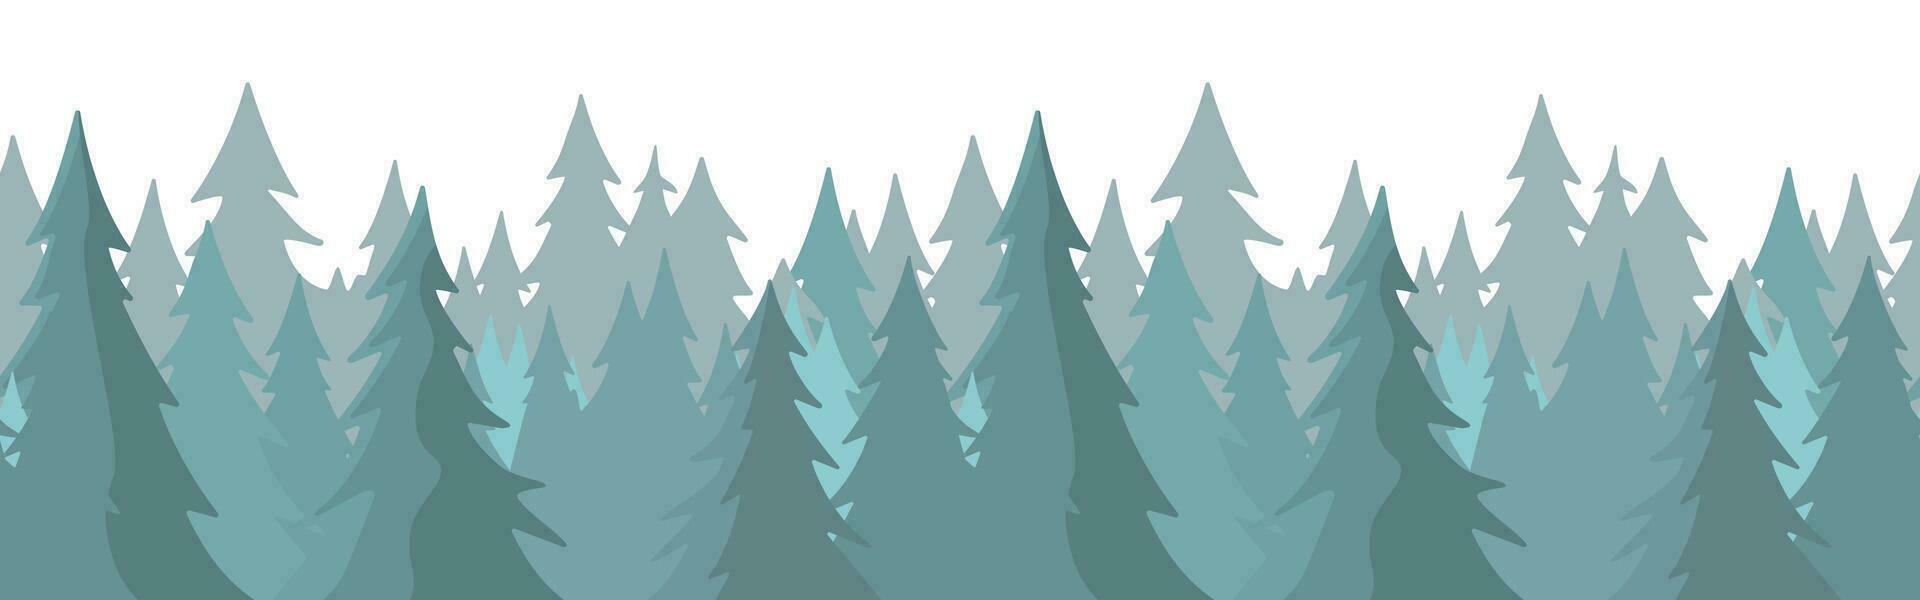 bosque panorama vista. pino árbol paisaje vector ilustración. abeto silueta. bandera antecedentes. niebla hojas perennes conífero arboles